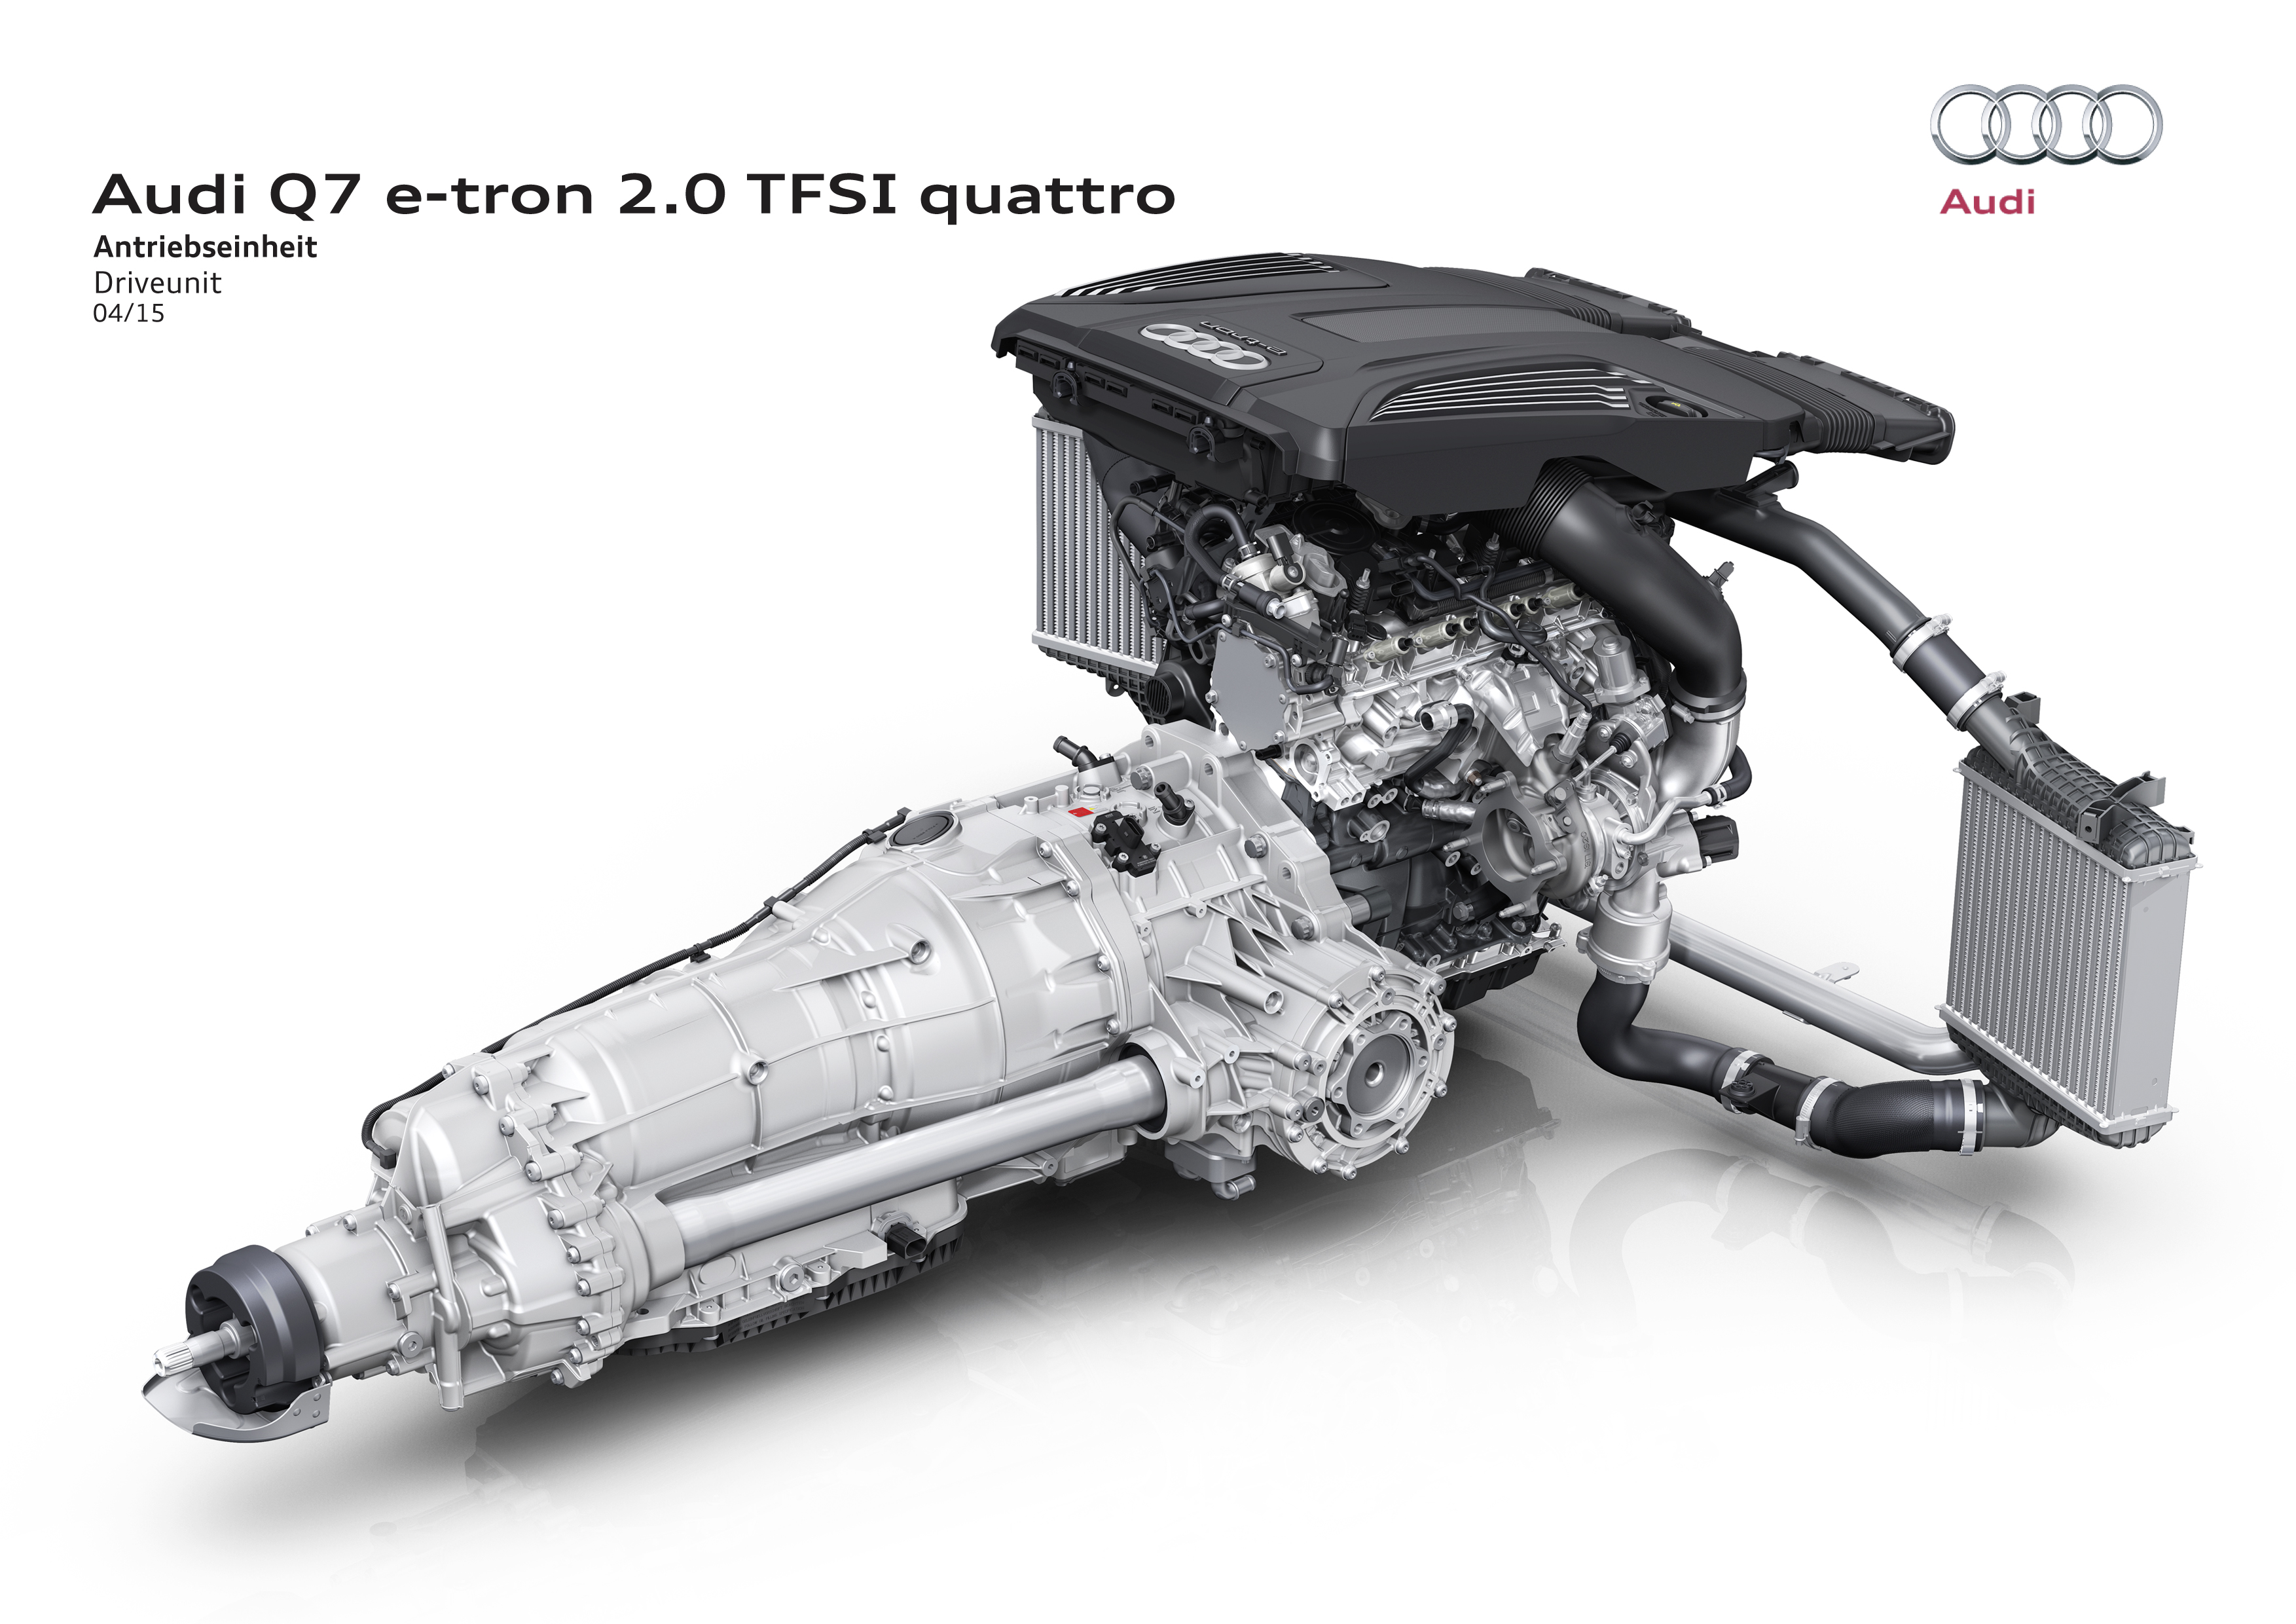 Audi Q7 e-tron 2.0 TFSI quattro - 2015 - driveunit engine